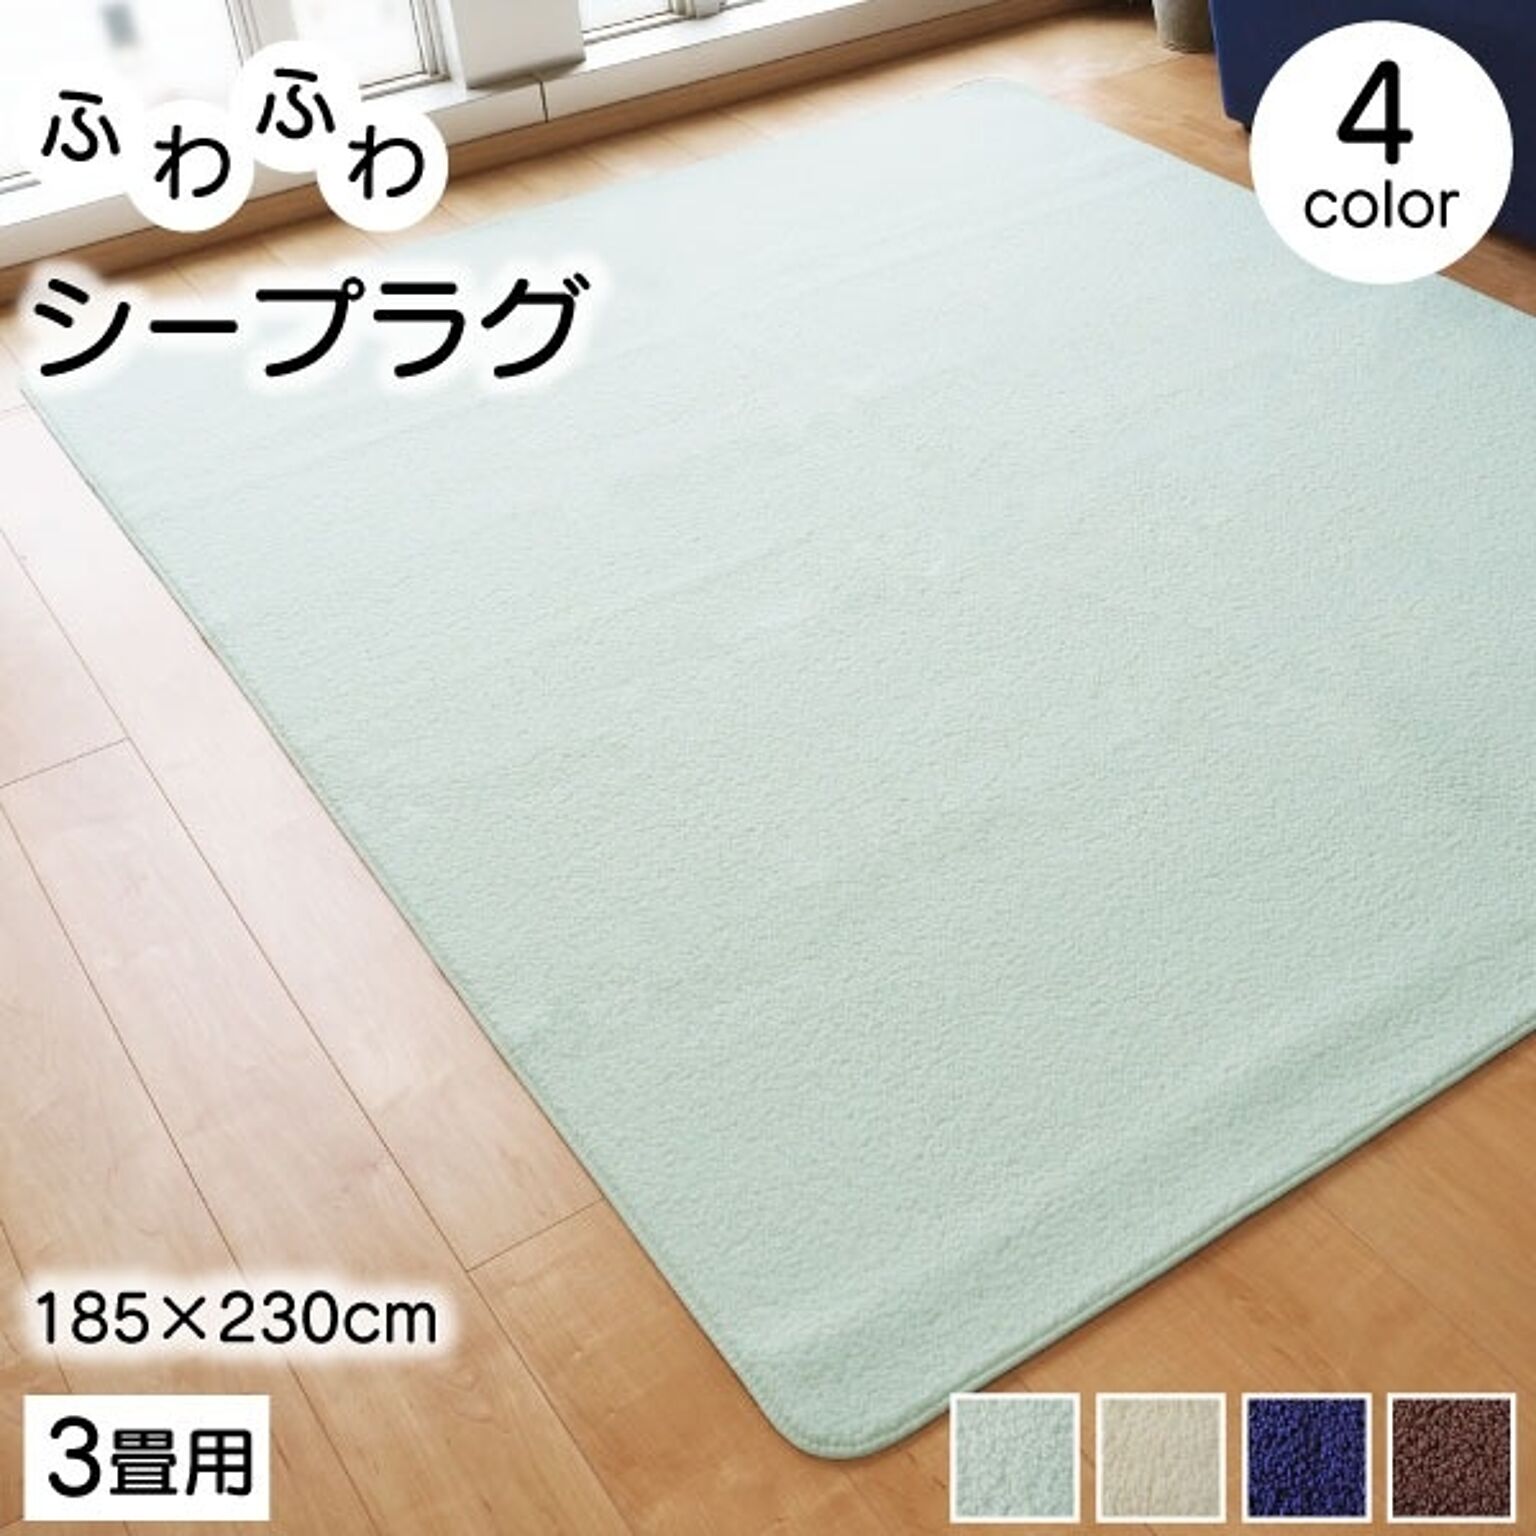 ラグマット 絨毯 約185cm×230cm ミントグリーン 洗える 軽量 持ち運び簡単 床暖房 ホットカーペット対応 リビング【代引不可】